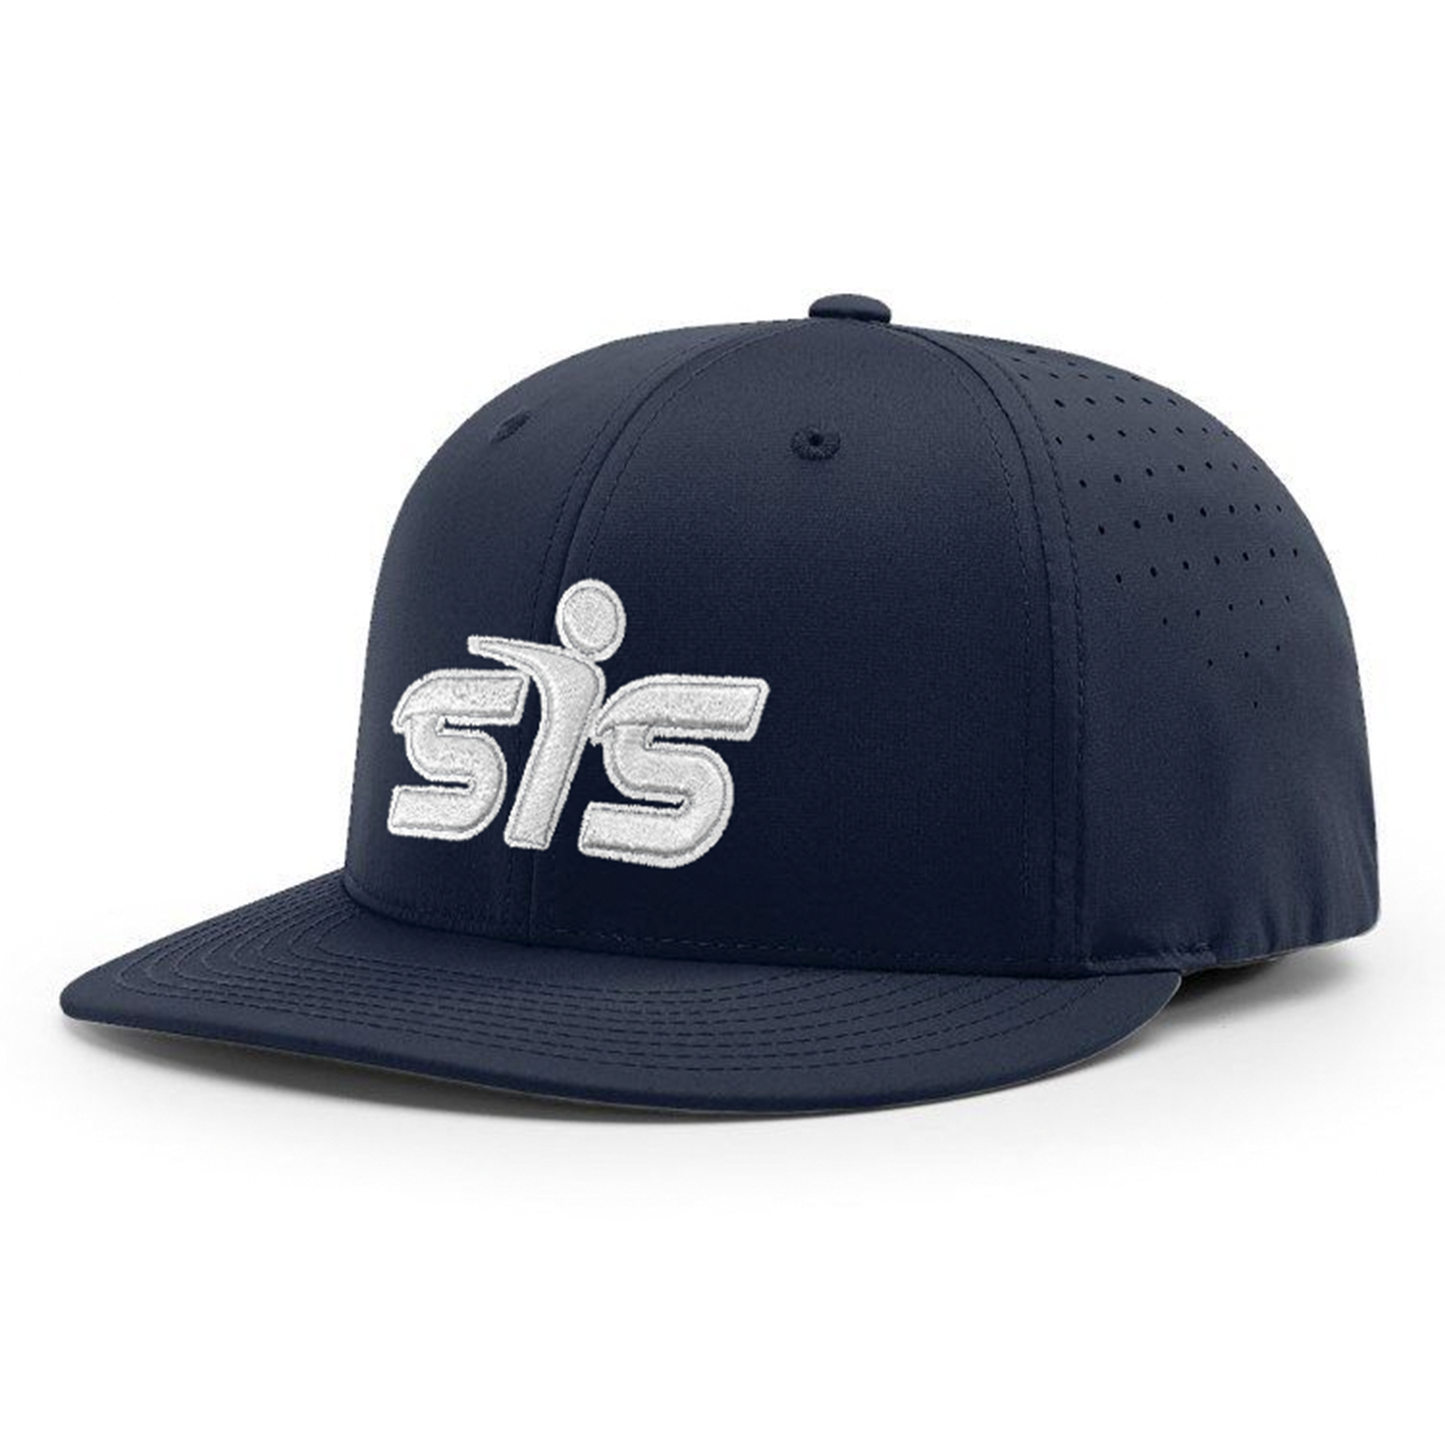 Smash It Sports CA i8503 Performance Hat - Navy/White